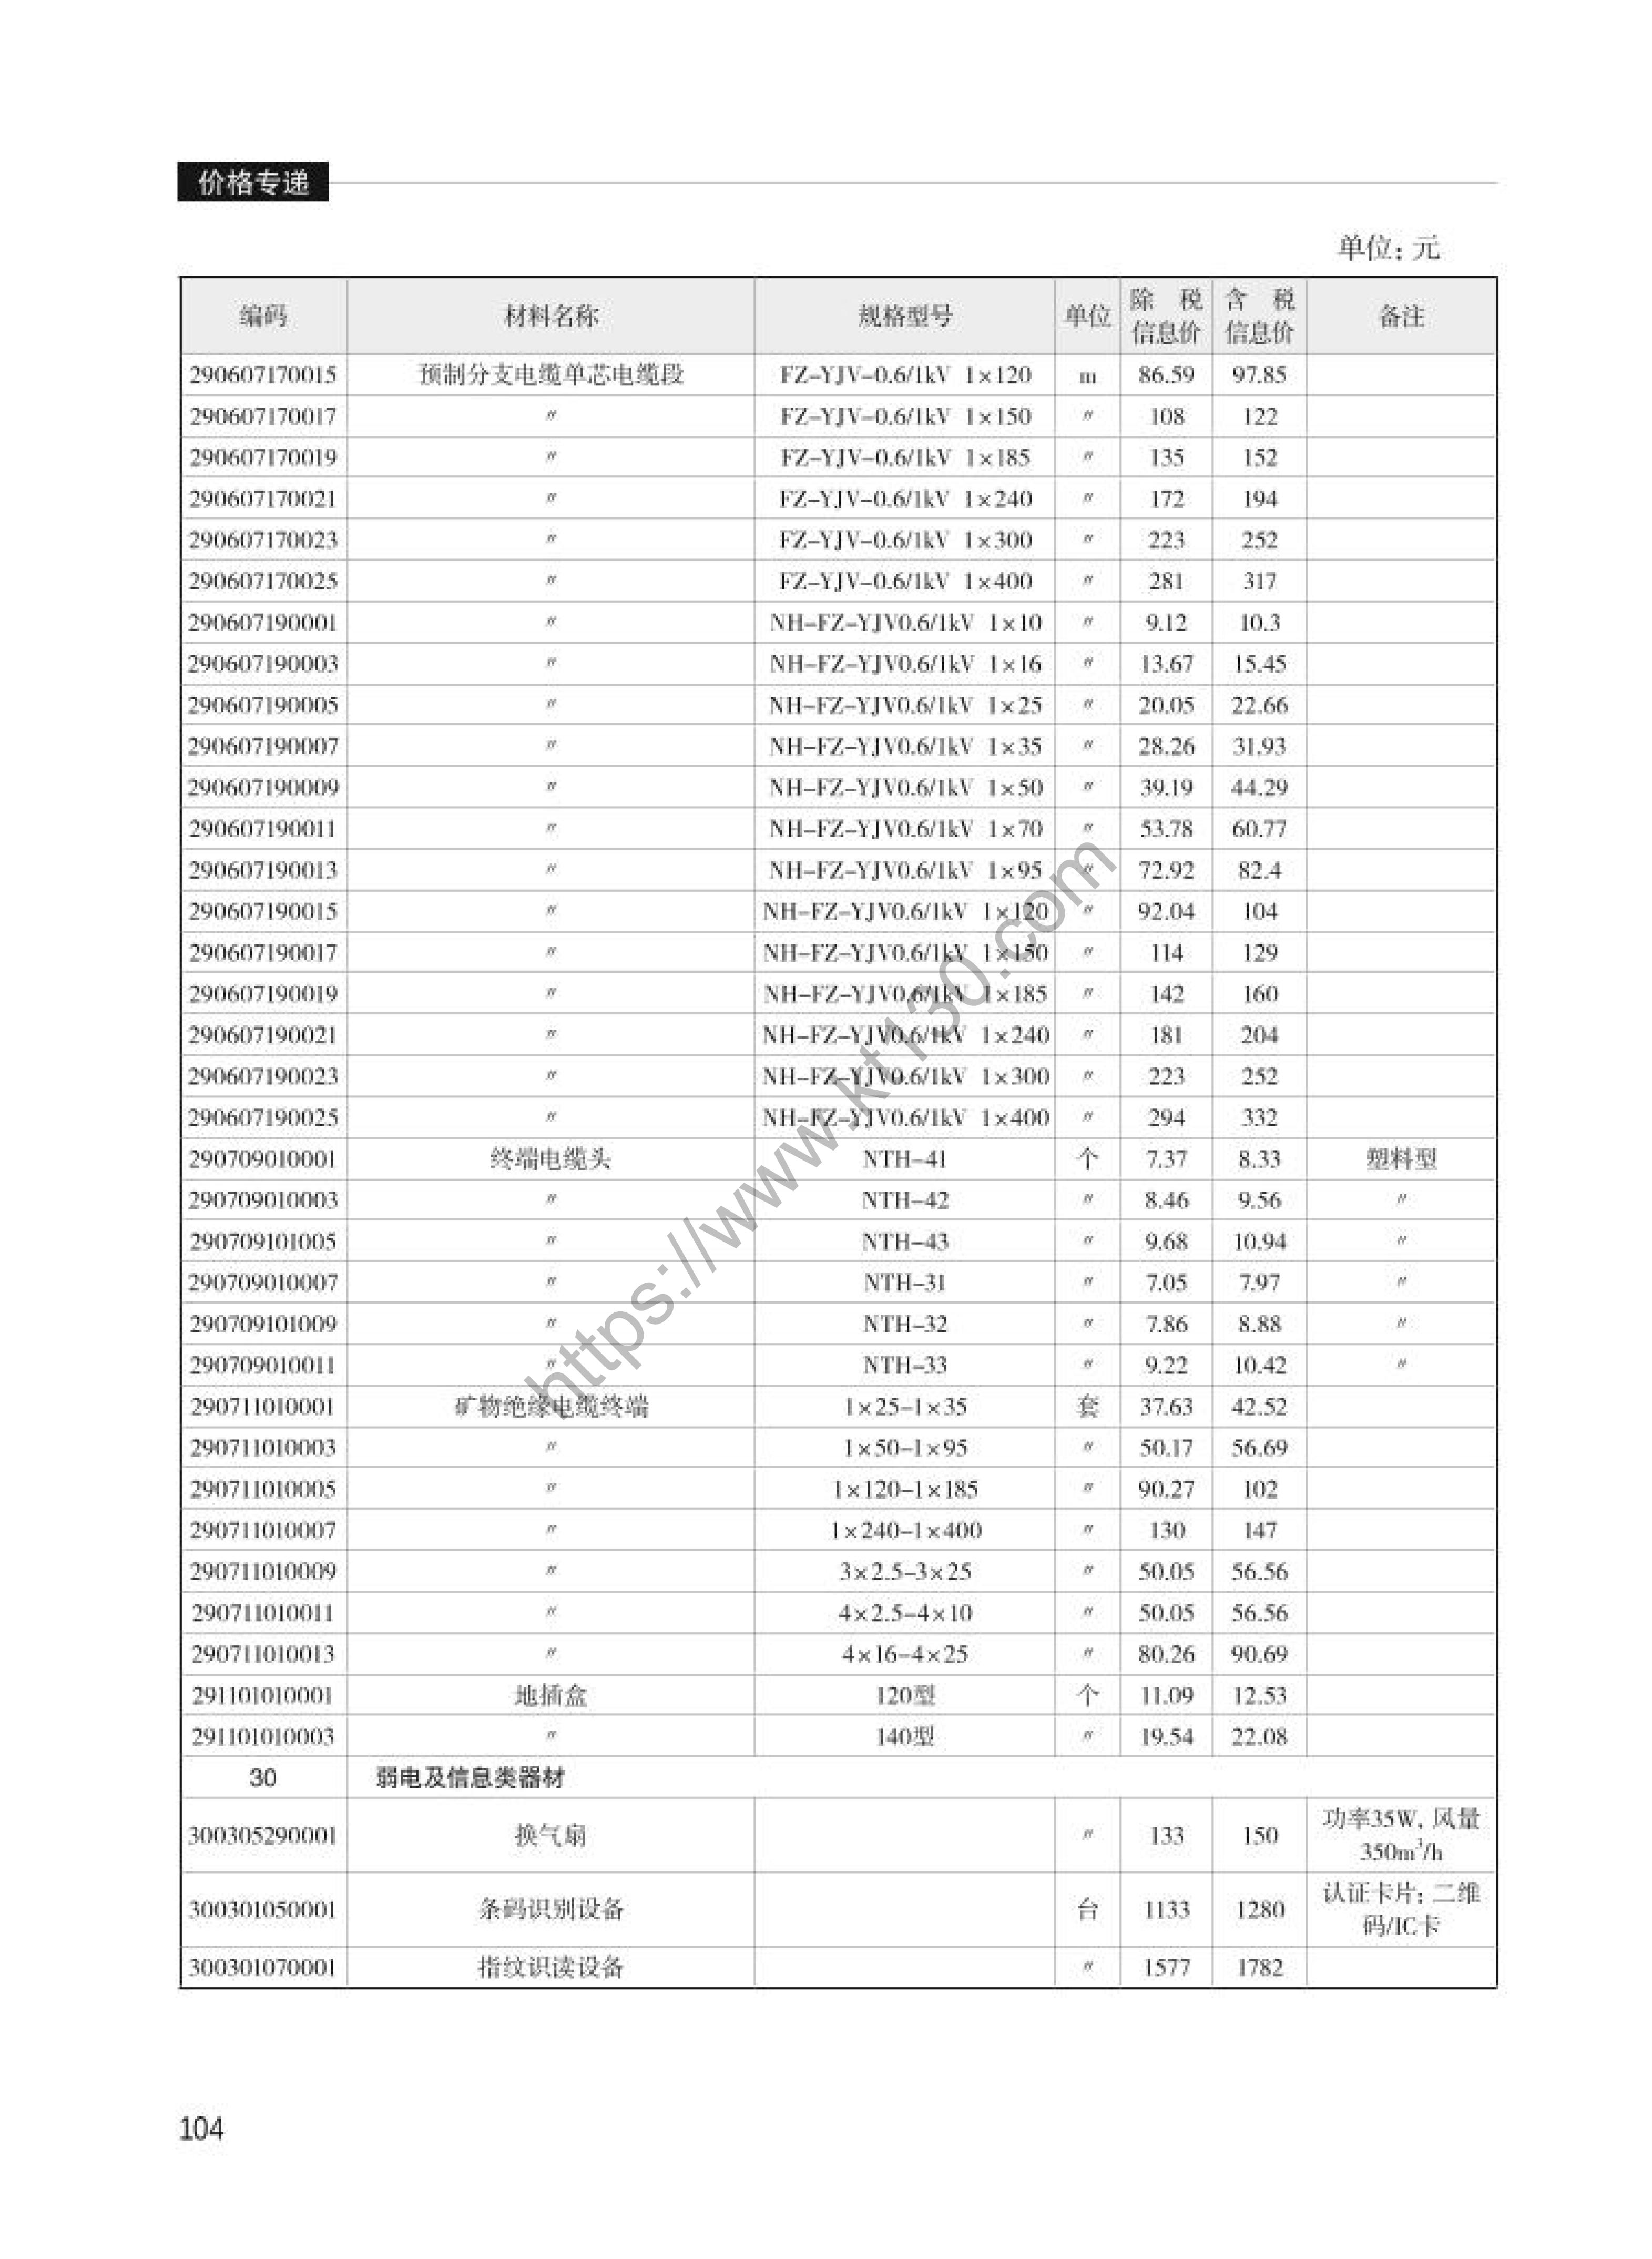 浙江省2022年6月建筑材料价_电气线路敷设材料_30053